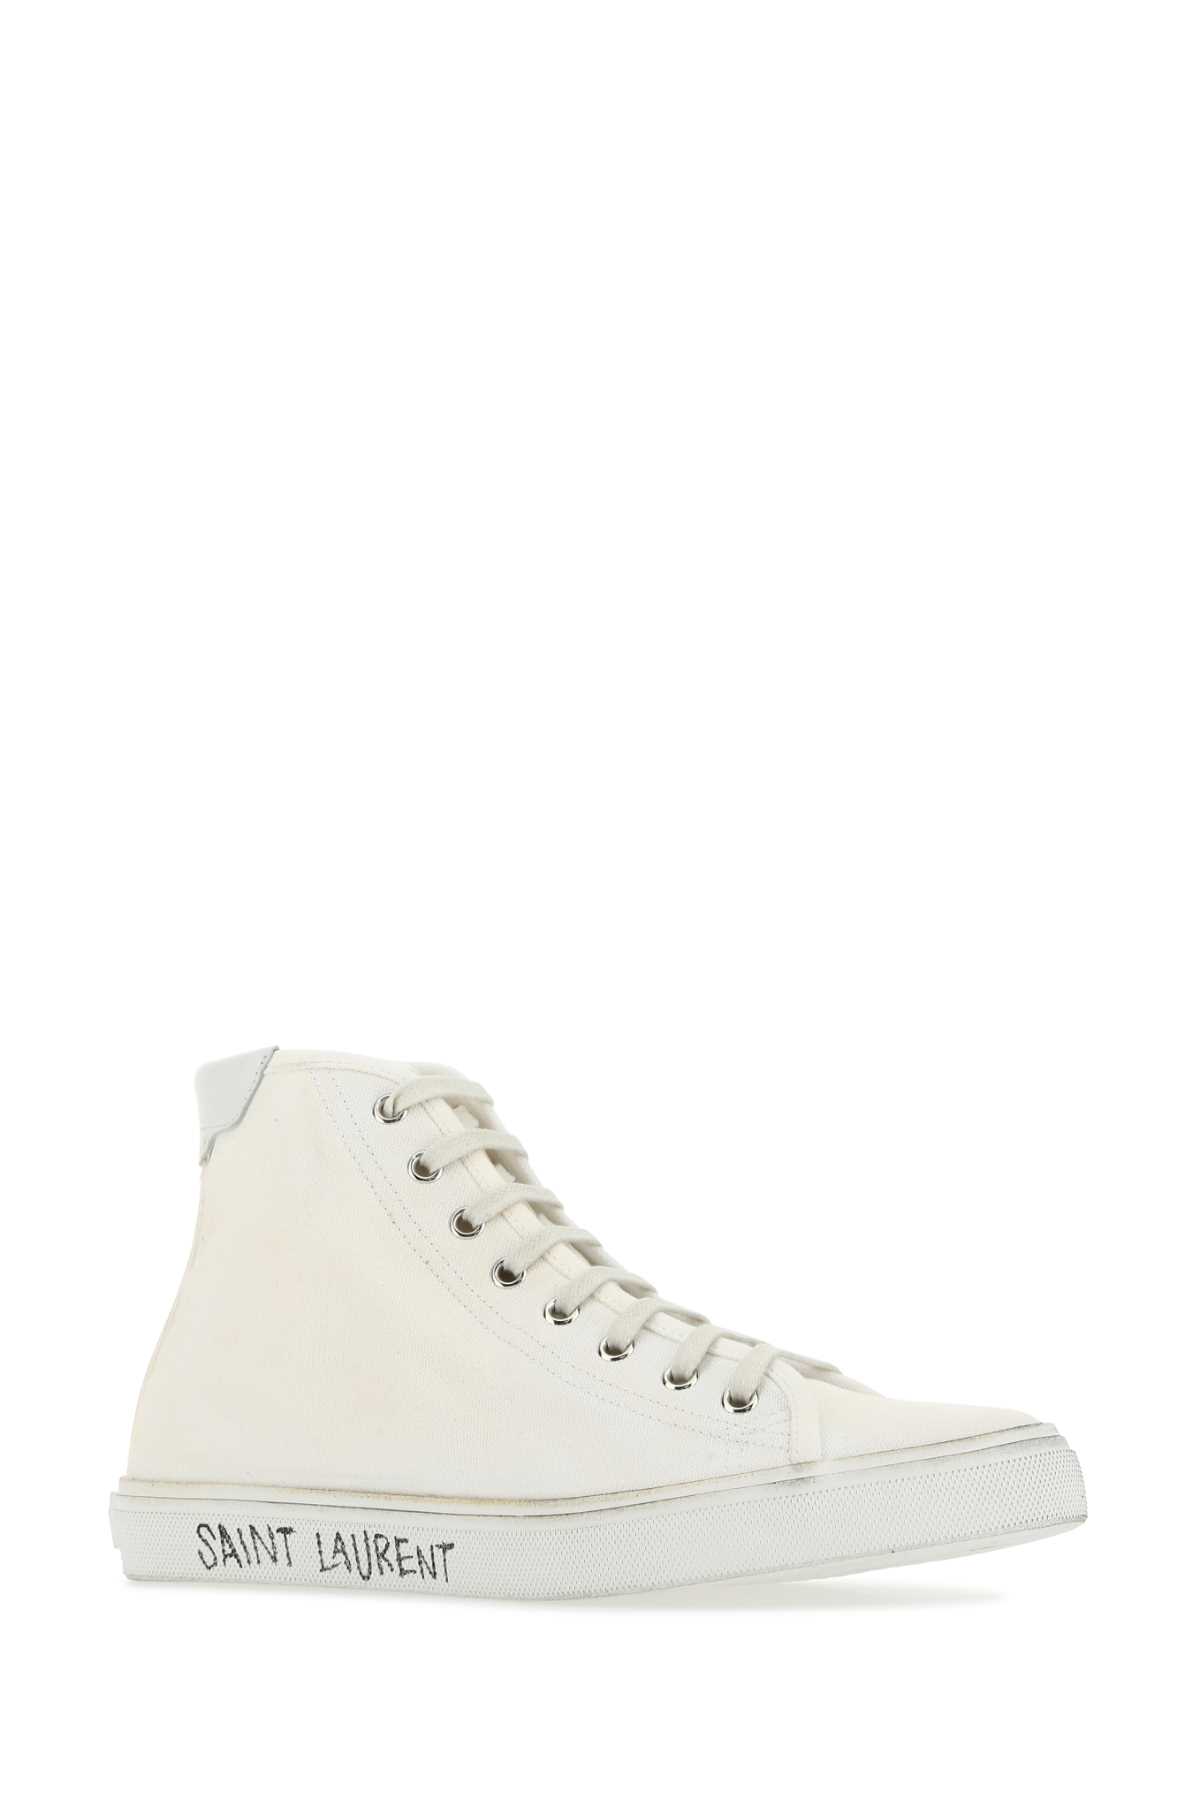 Saint Laurent White Canvas Malibã¹ Sneakers